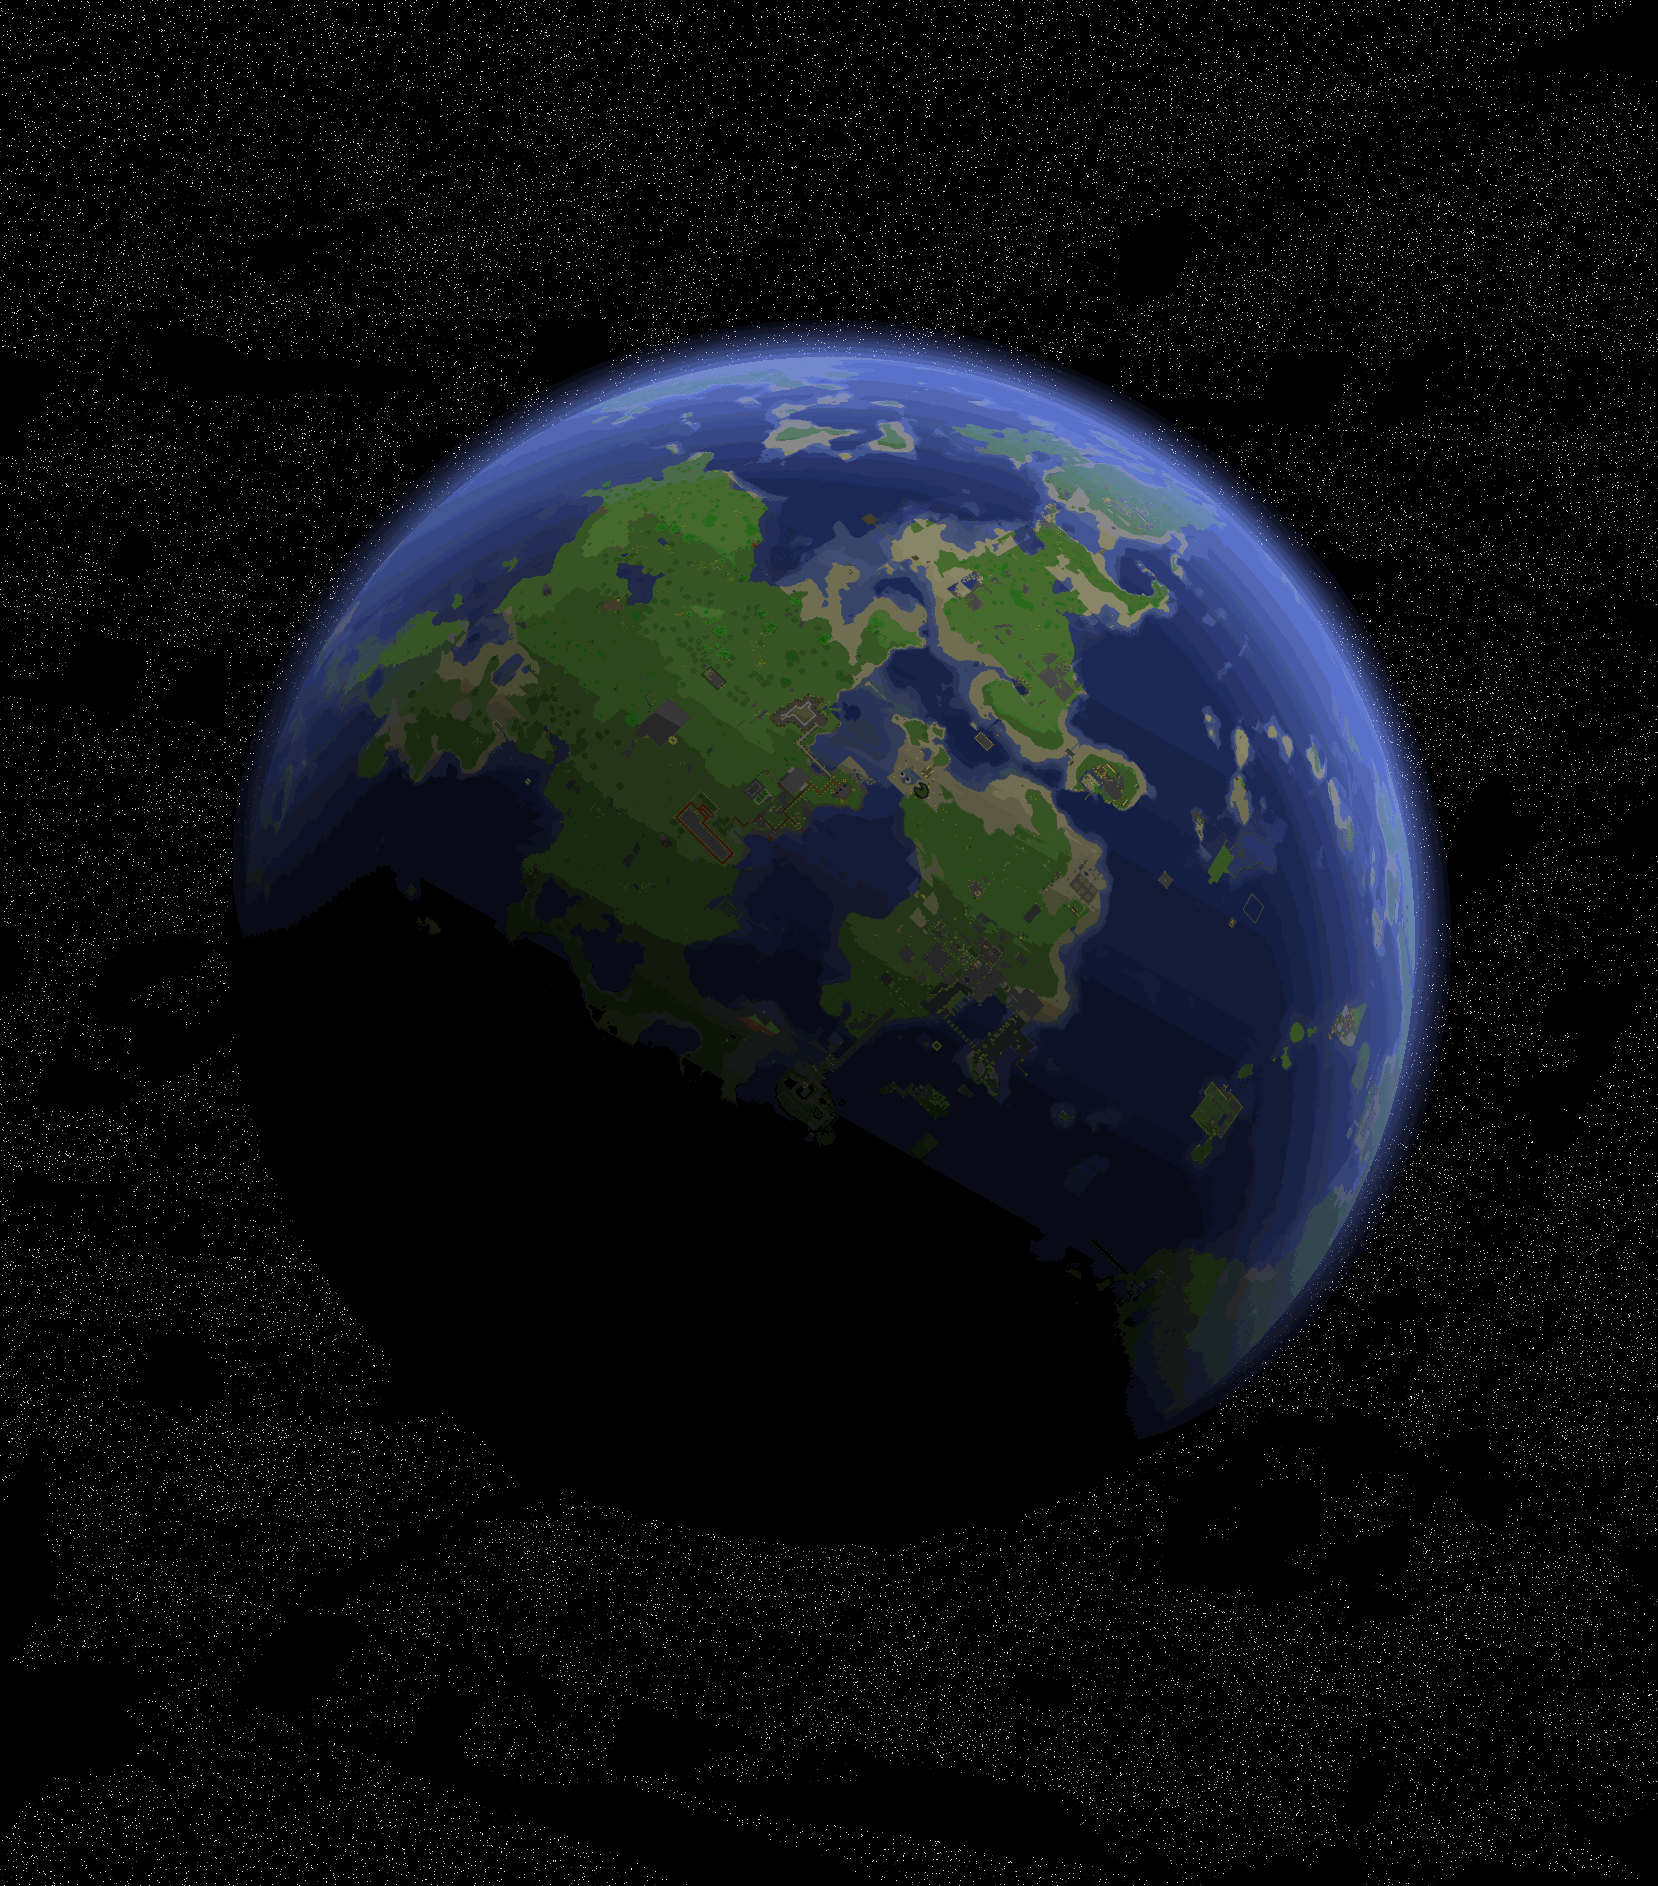 Minecraft planet versus earth. by WorldOfPeter12 on DeviantArt